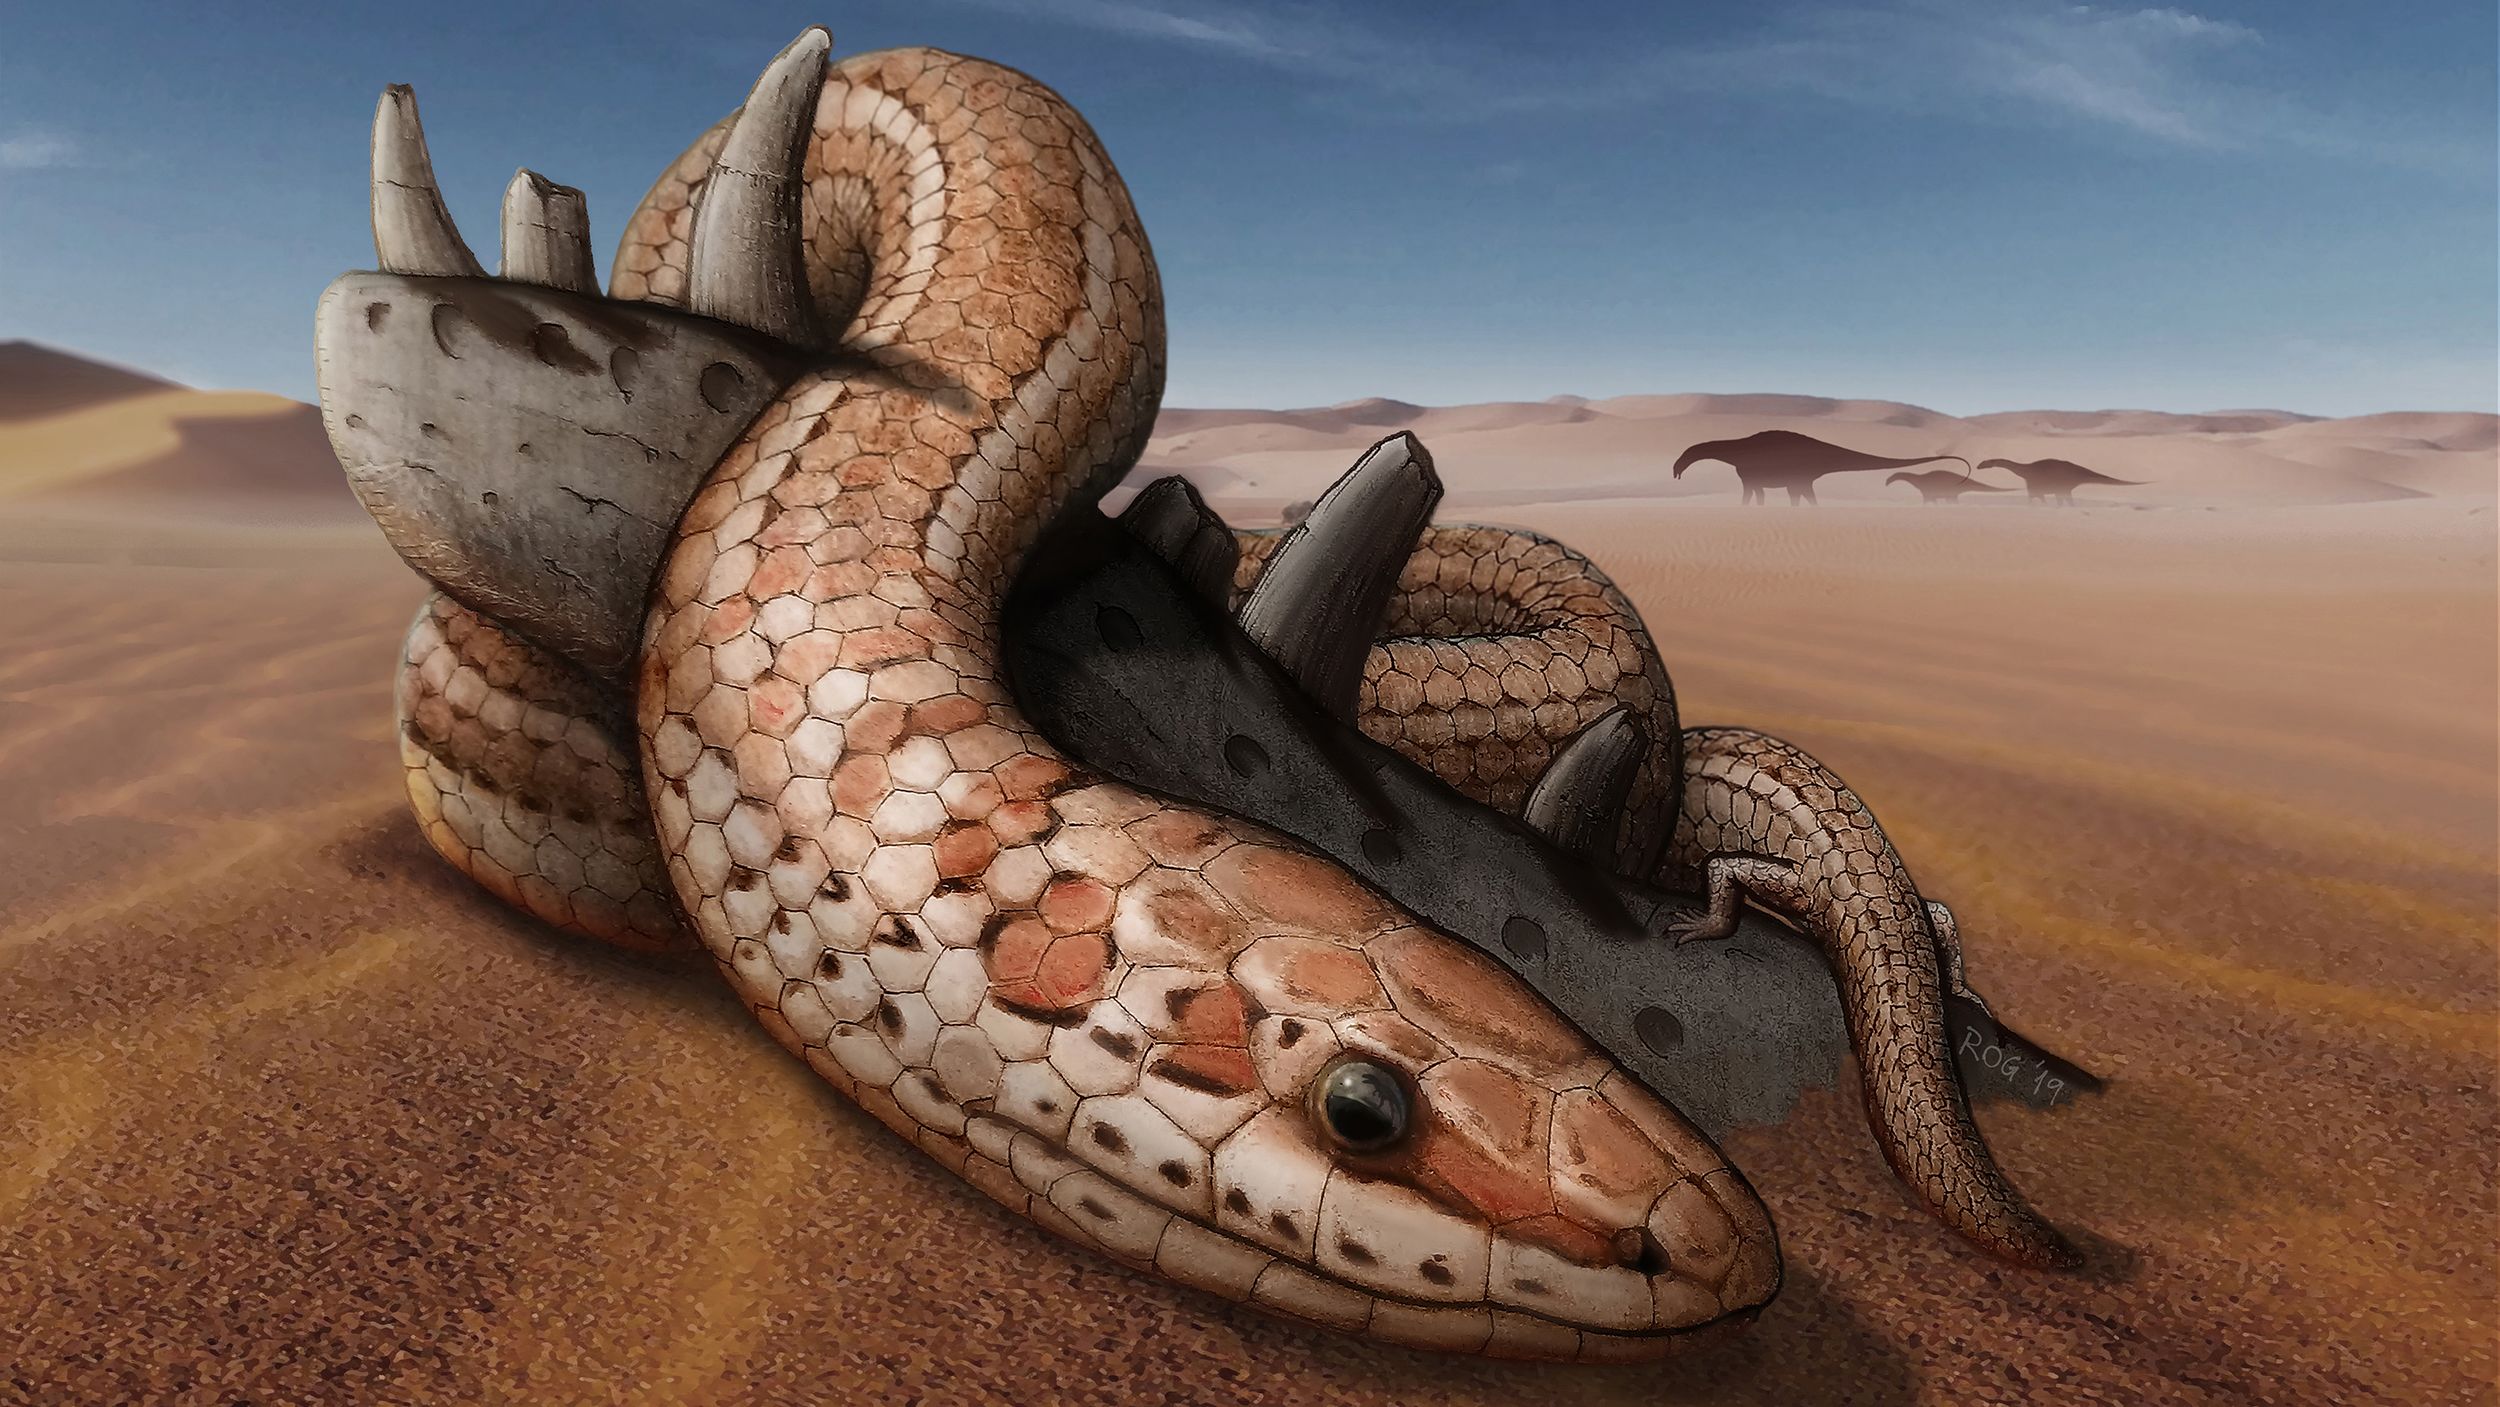 giant prehistoric snake skeleton